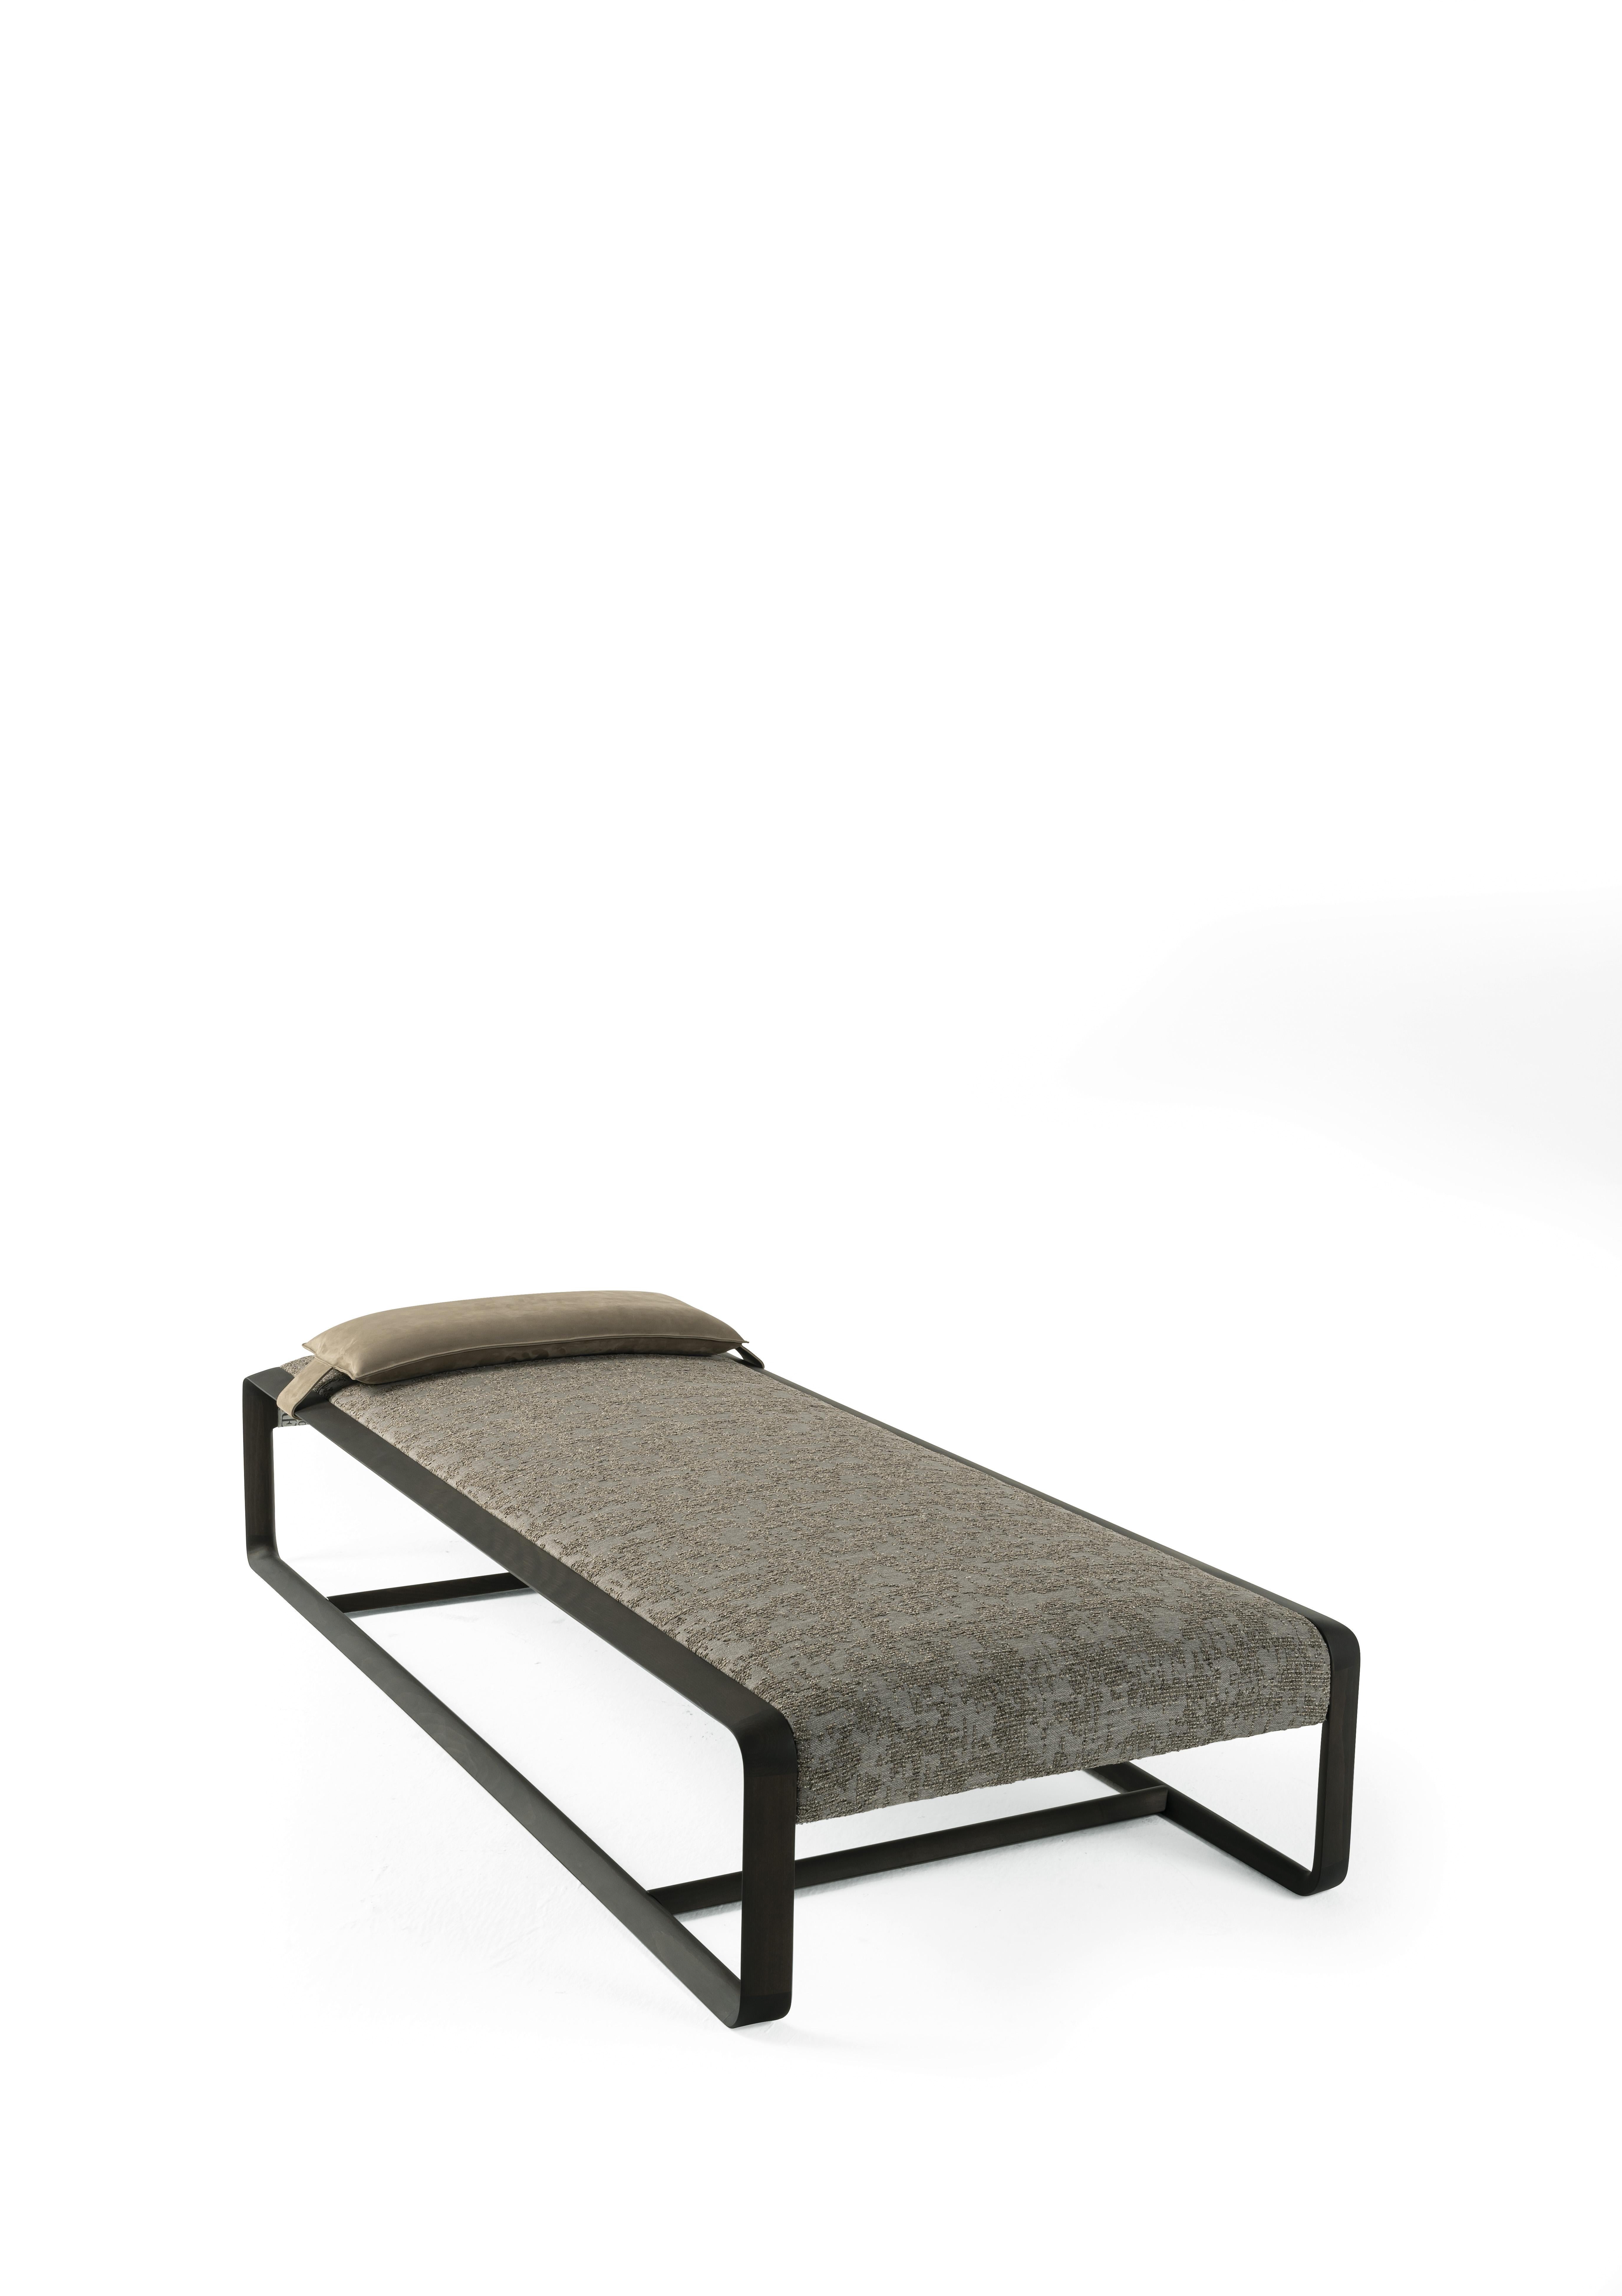 Avec son design minimal-chic, le lit de jour Wynwood offre une assise supplémentaire et devient, lorsque c'est nécessaire, un élément de séparation entre différentes pièces. Capable d'allier esthétique et confort, le meuble arbore une ligne fine